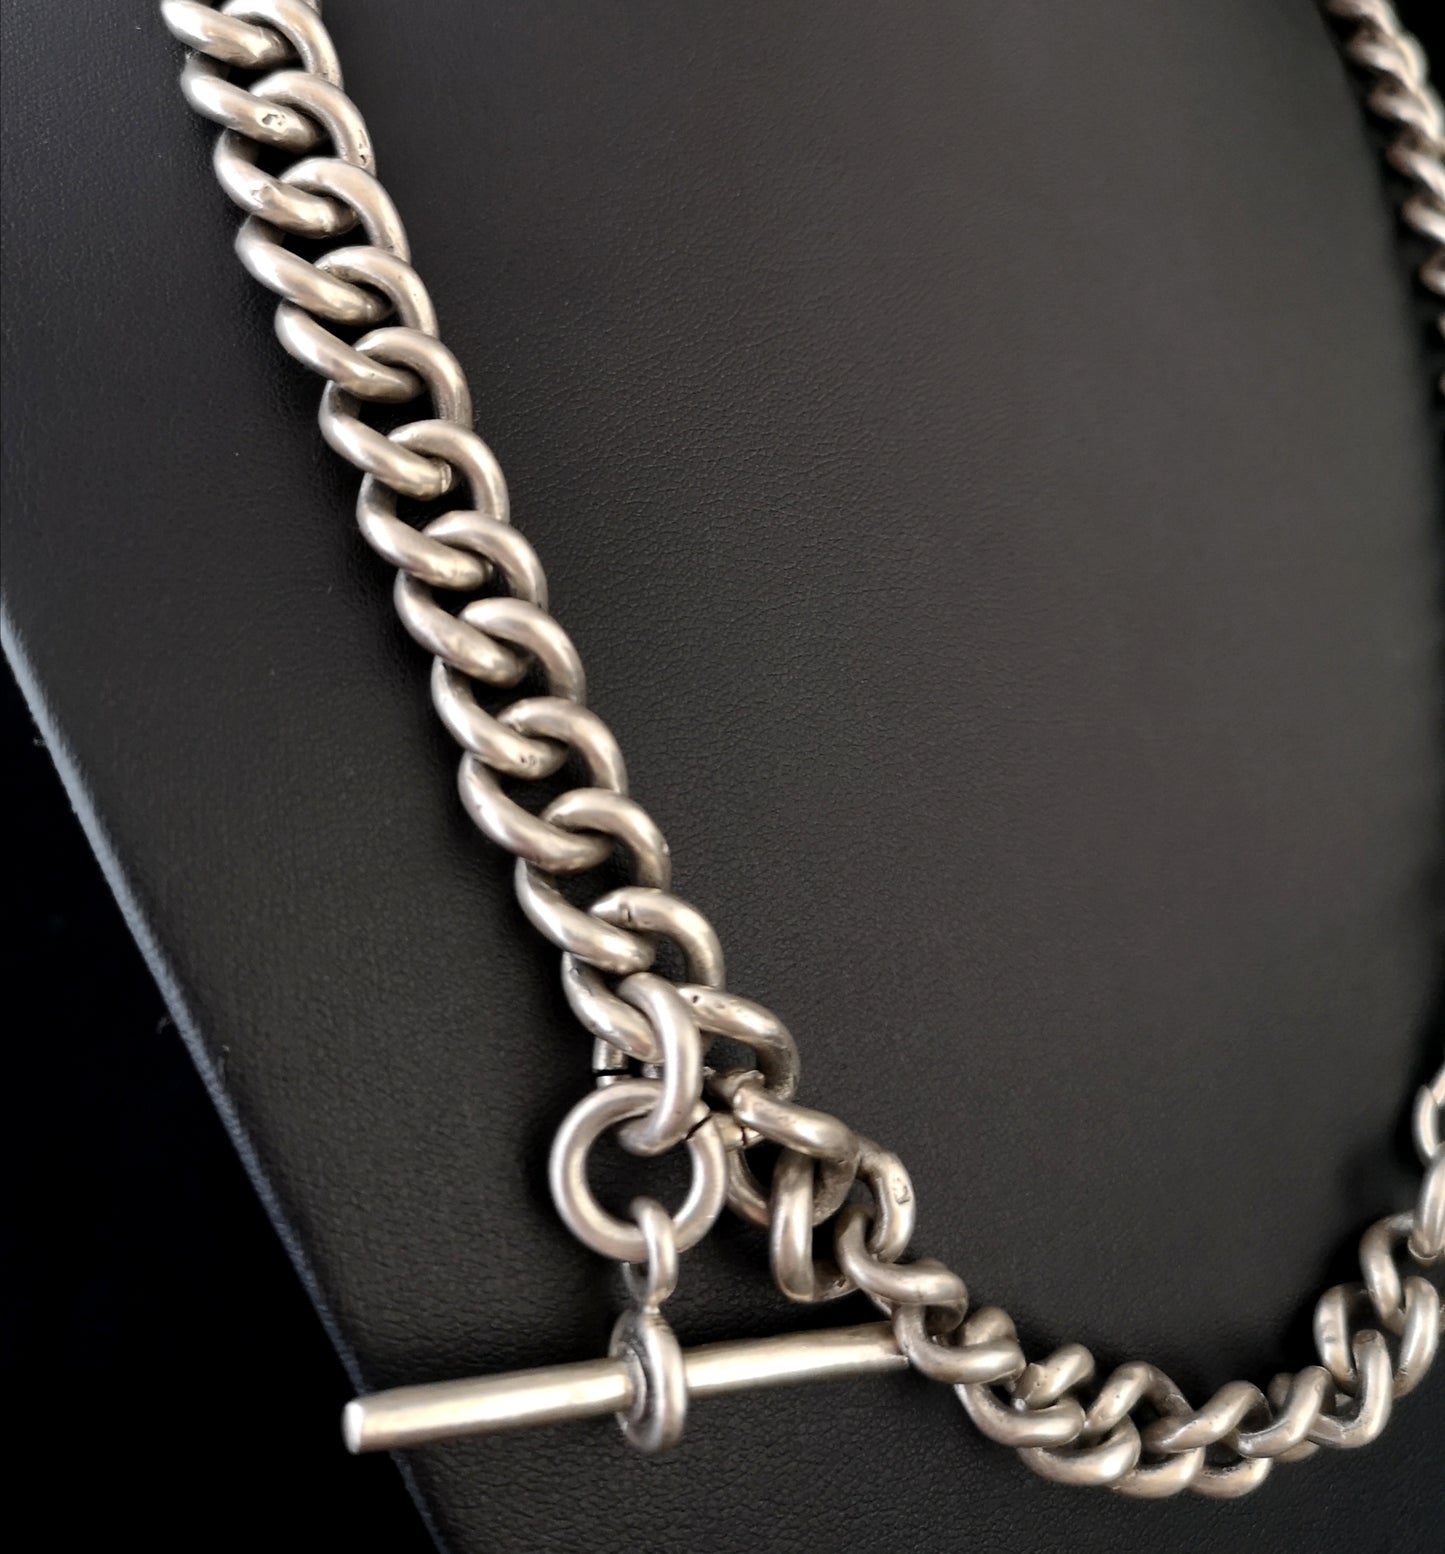 Antique silver albert chain, watch chain, heavy